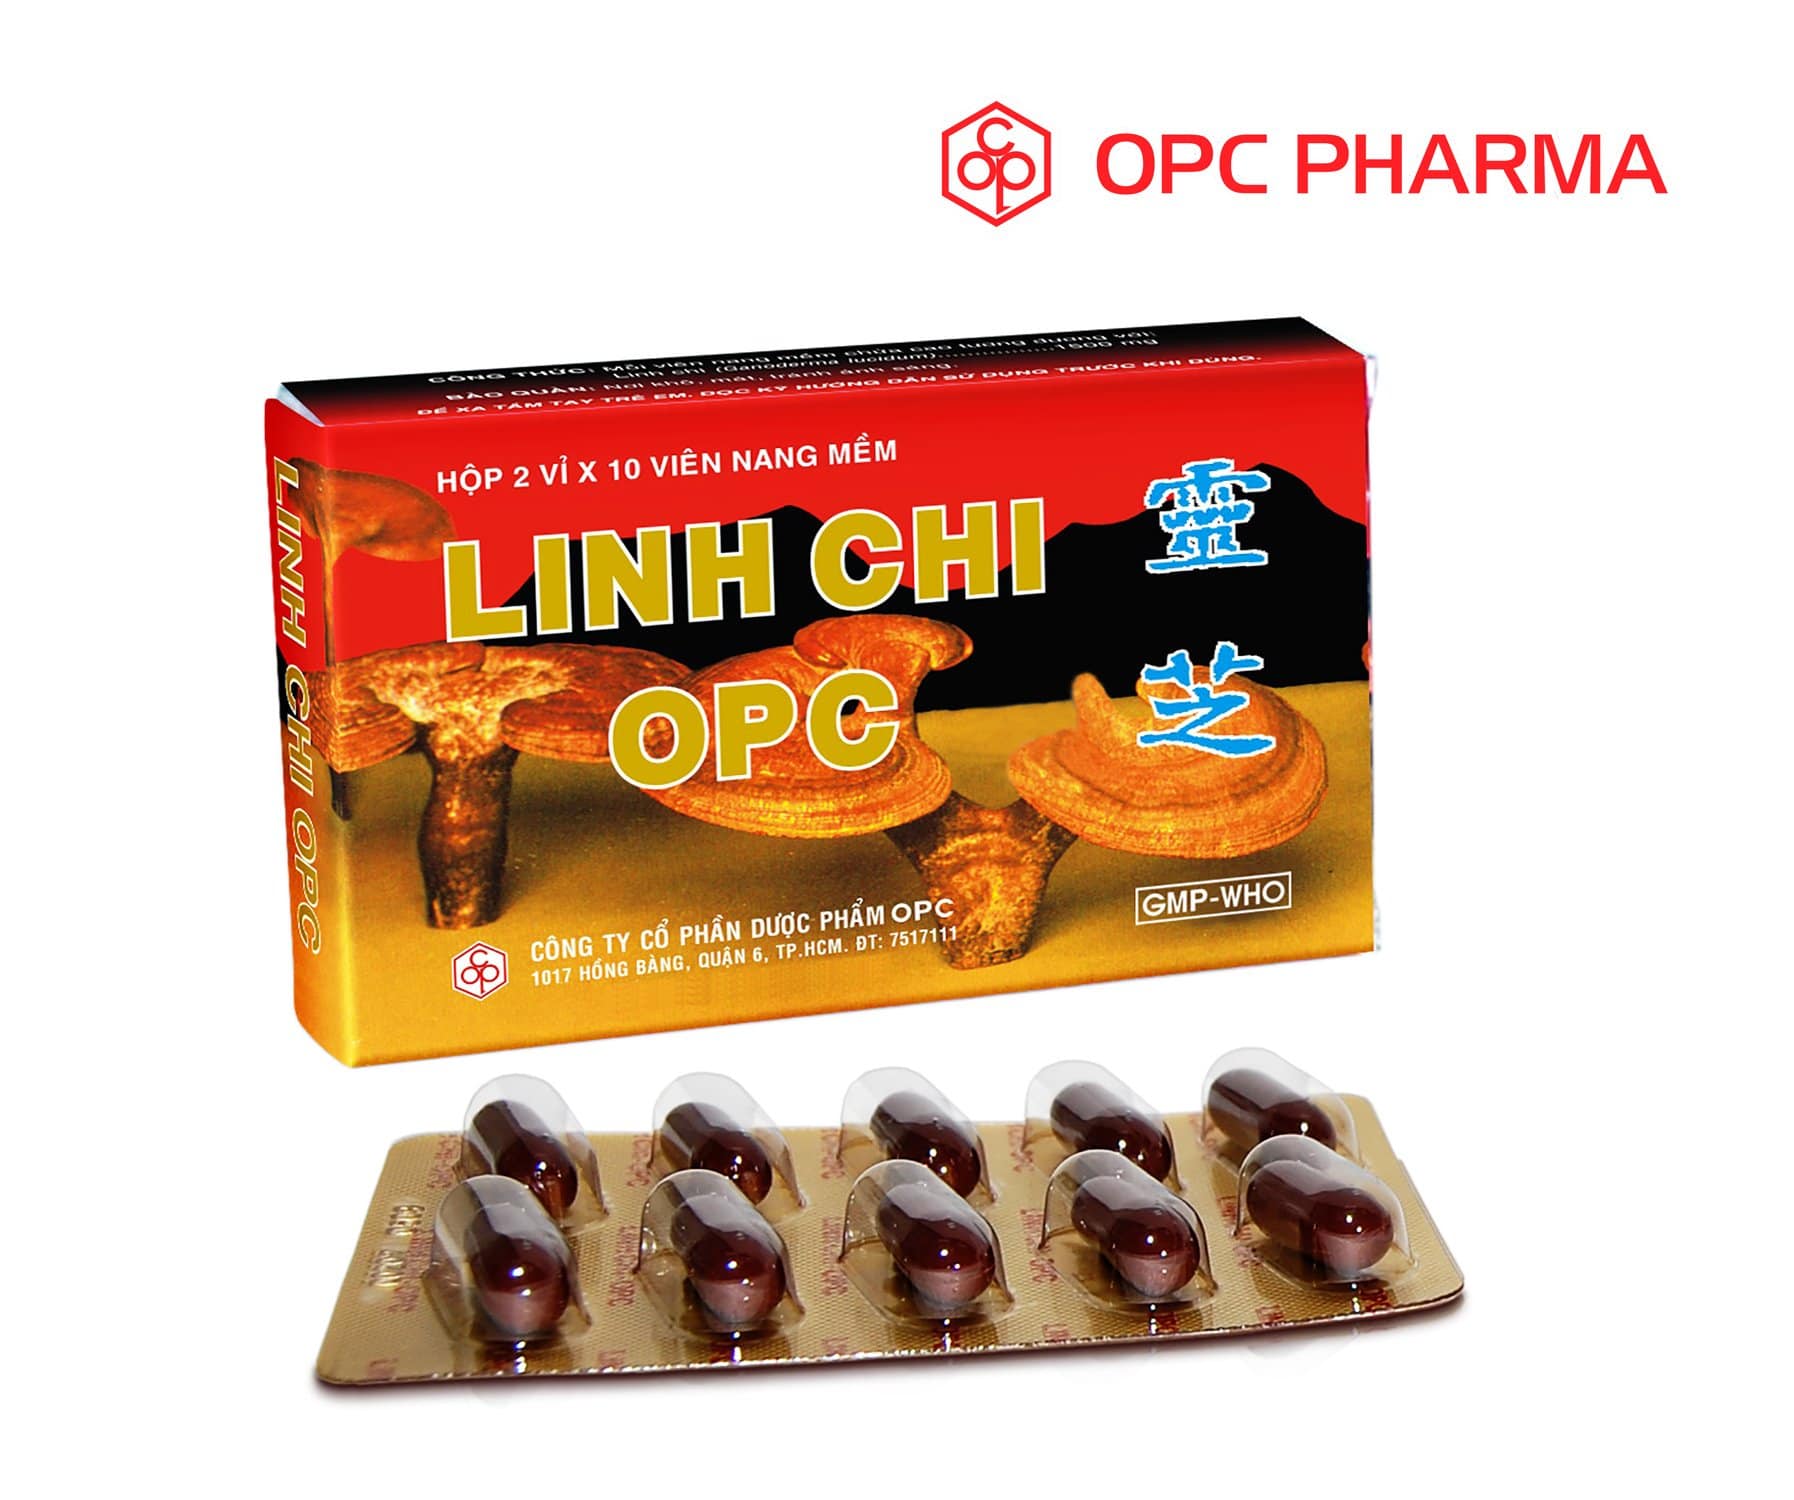 LINH CHI OPC- Điều hòa huyết áp, giảm Cholesterol trong máu